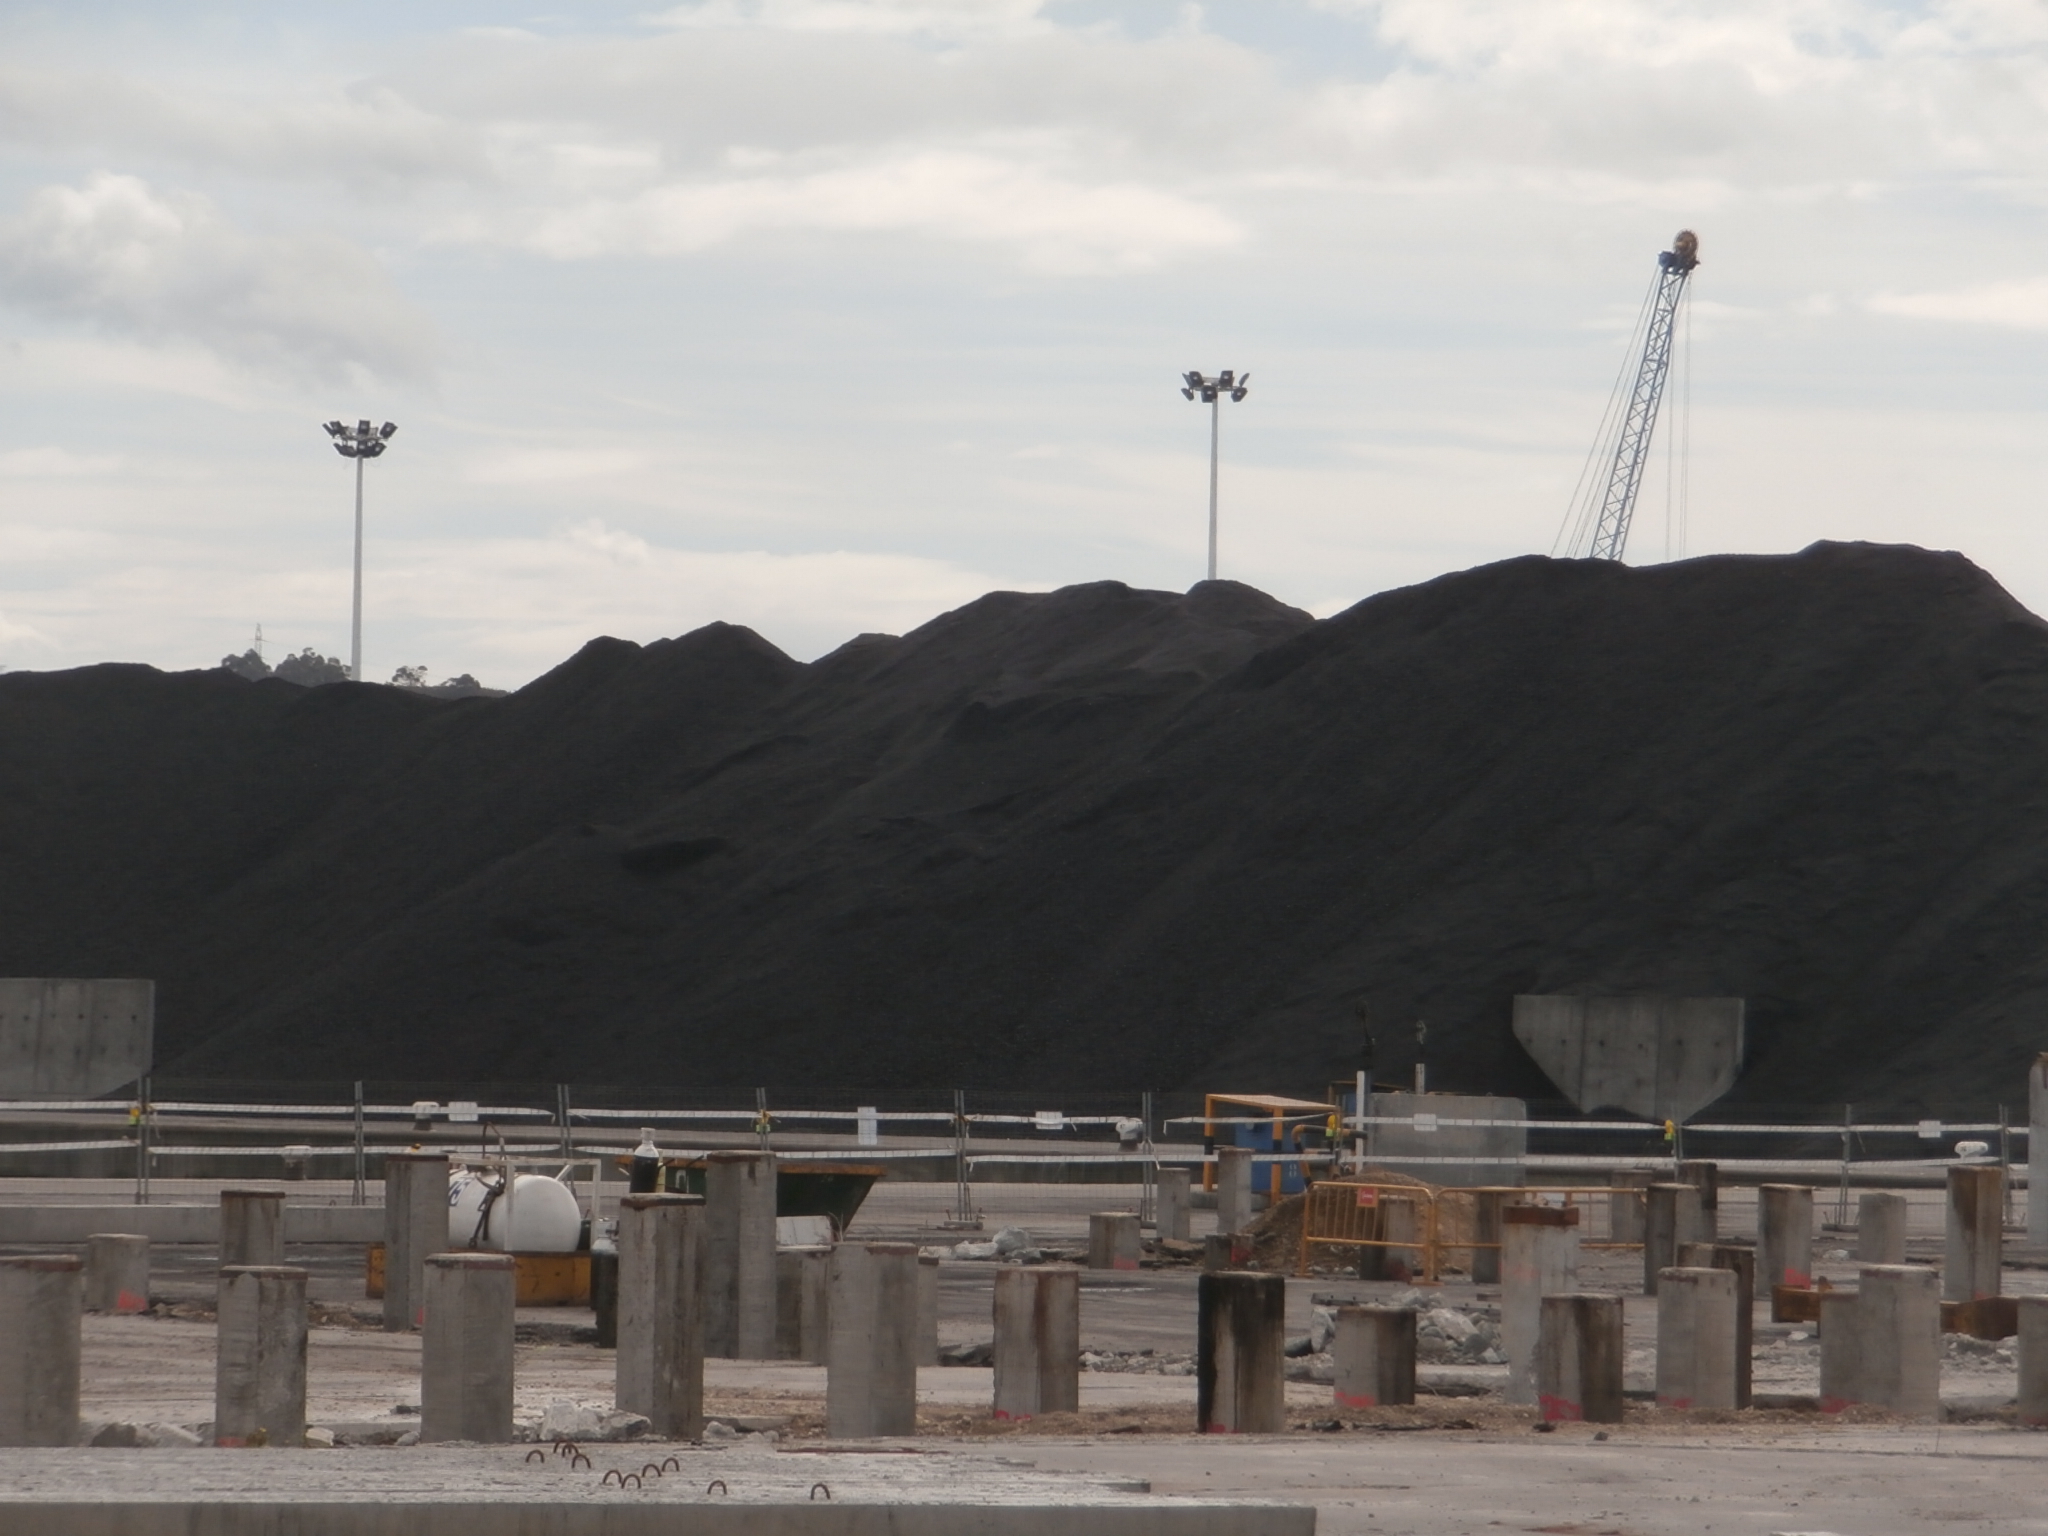 Nos preocupa mas manipulaciones de carbones en el Puerto de Avilés